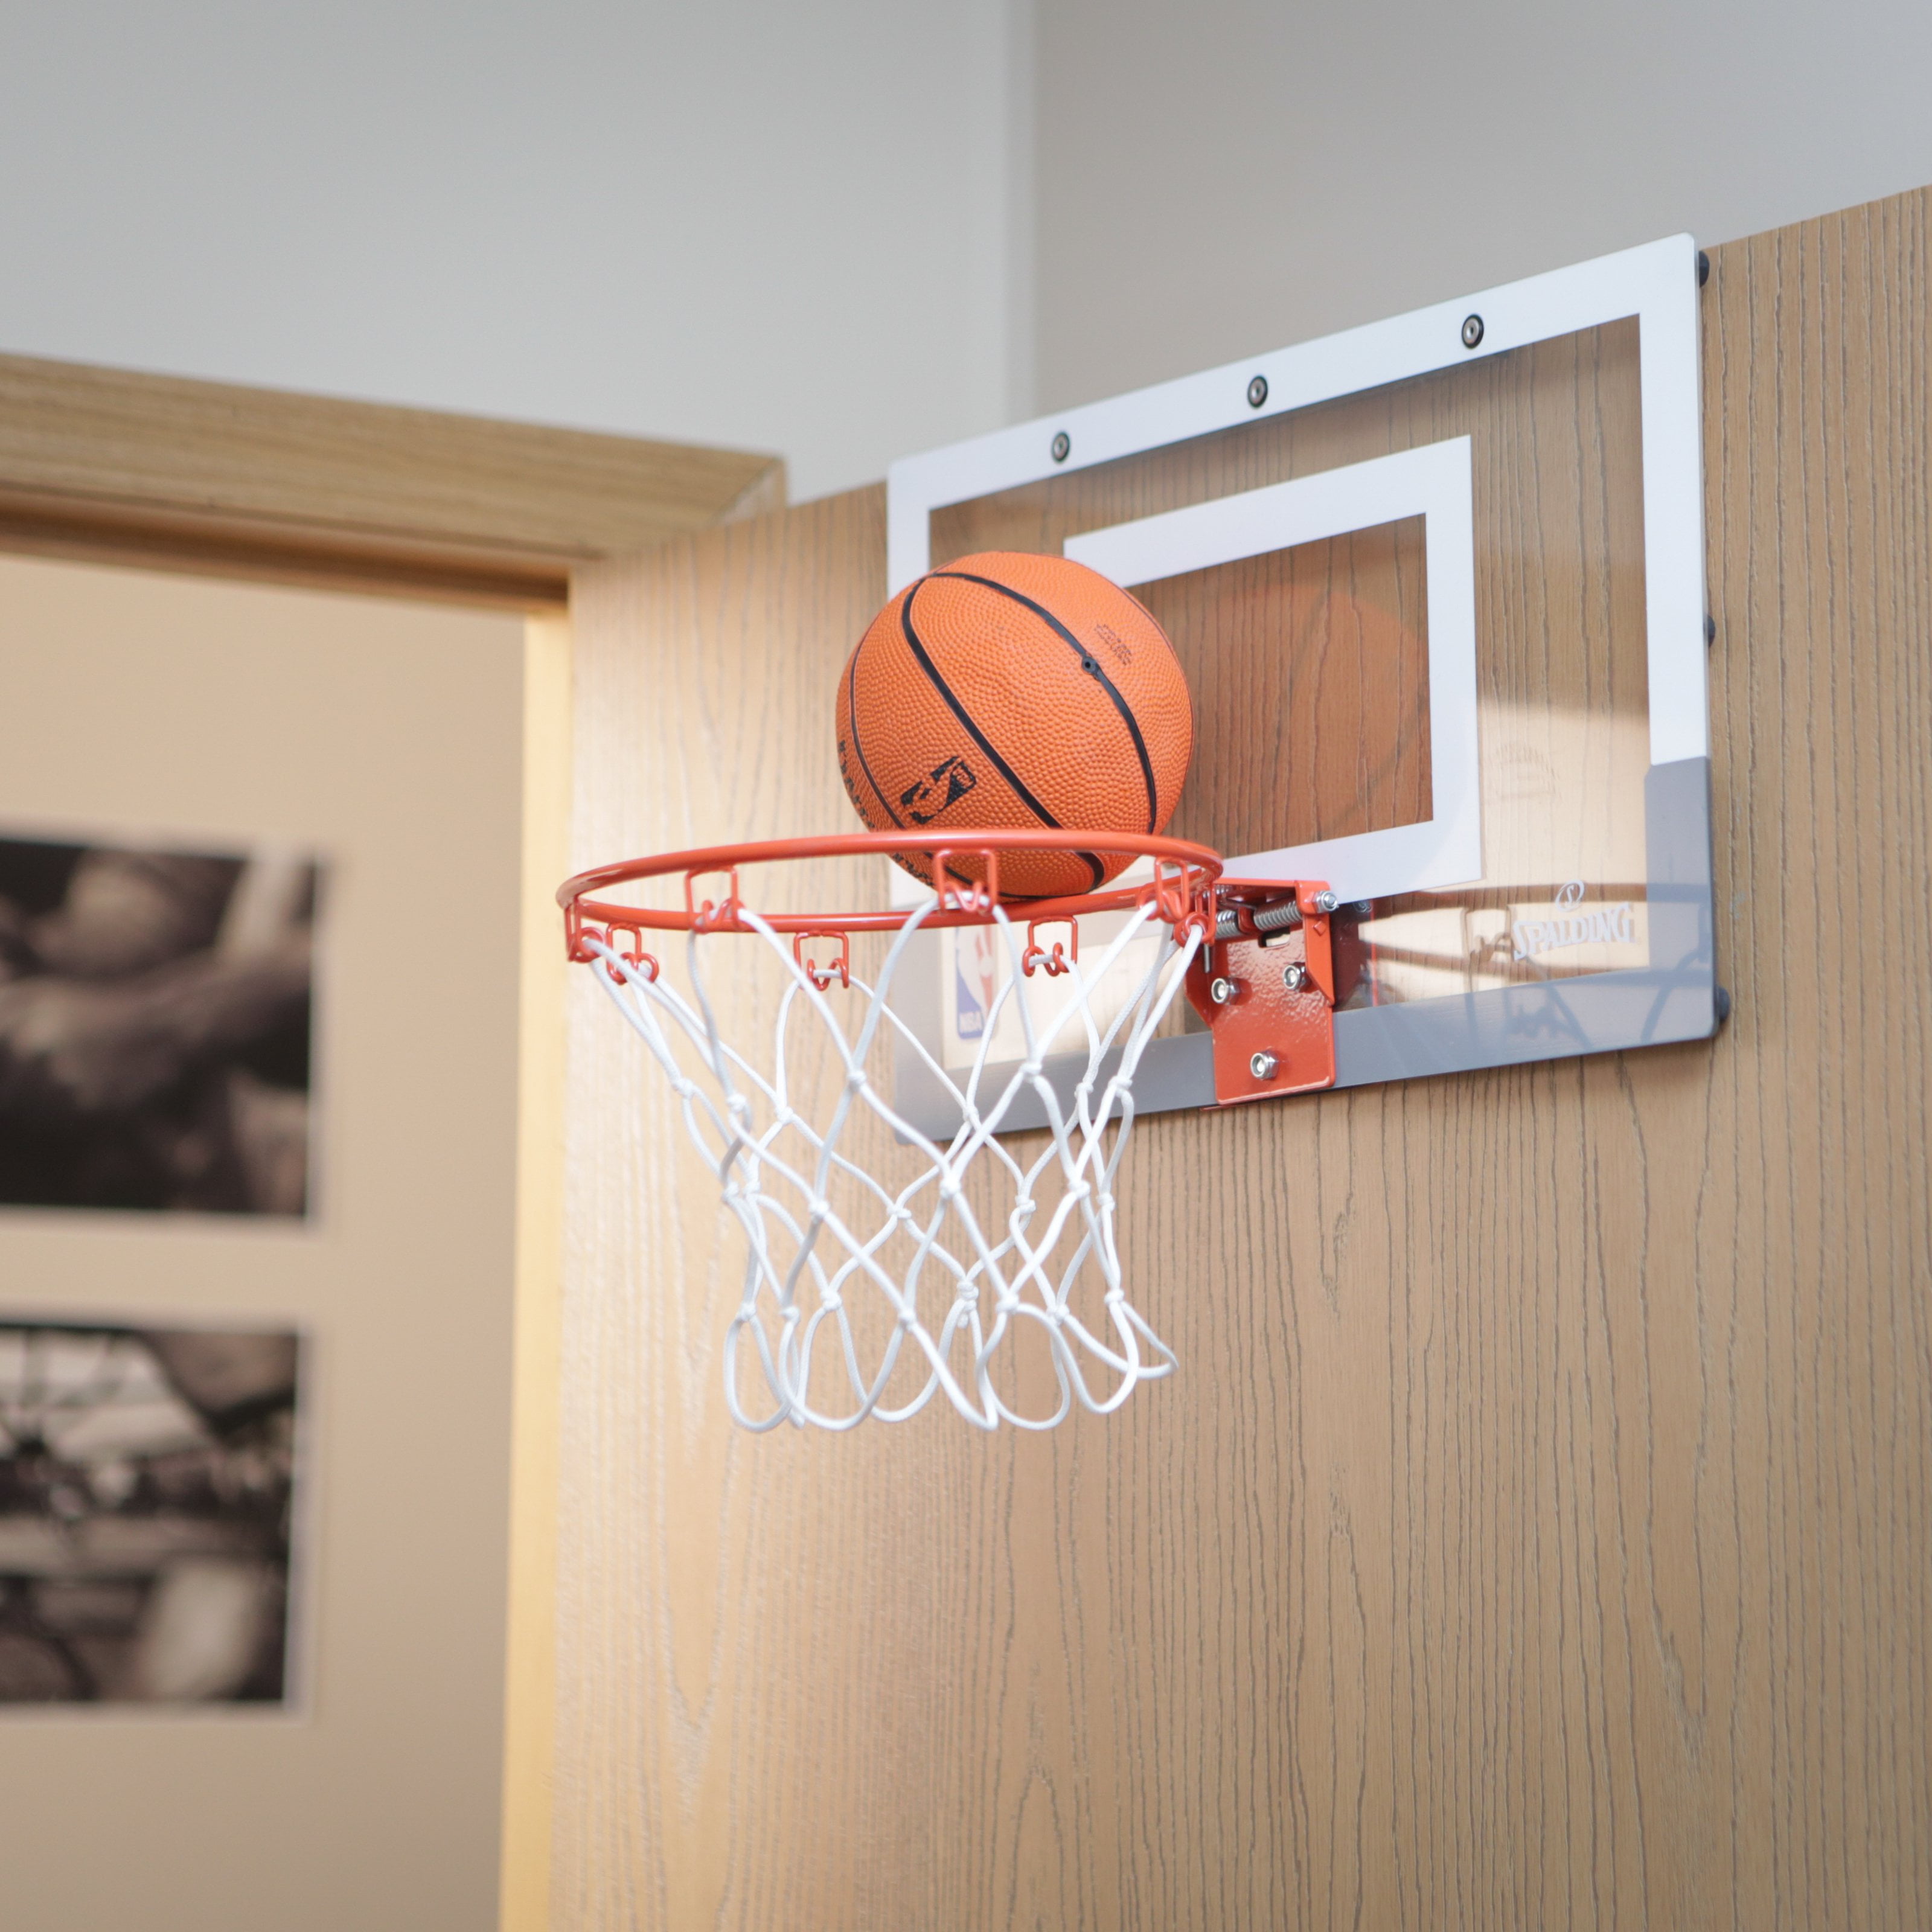 Spalding Slam Jam Mini Over-the-Door Basketball Hoop